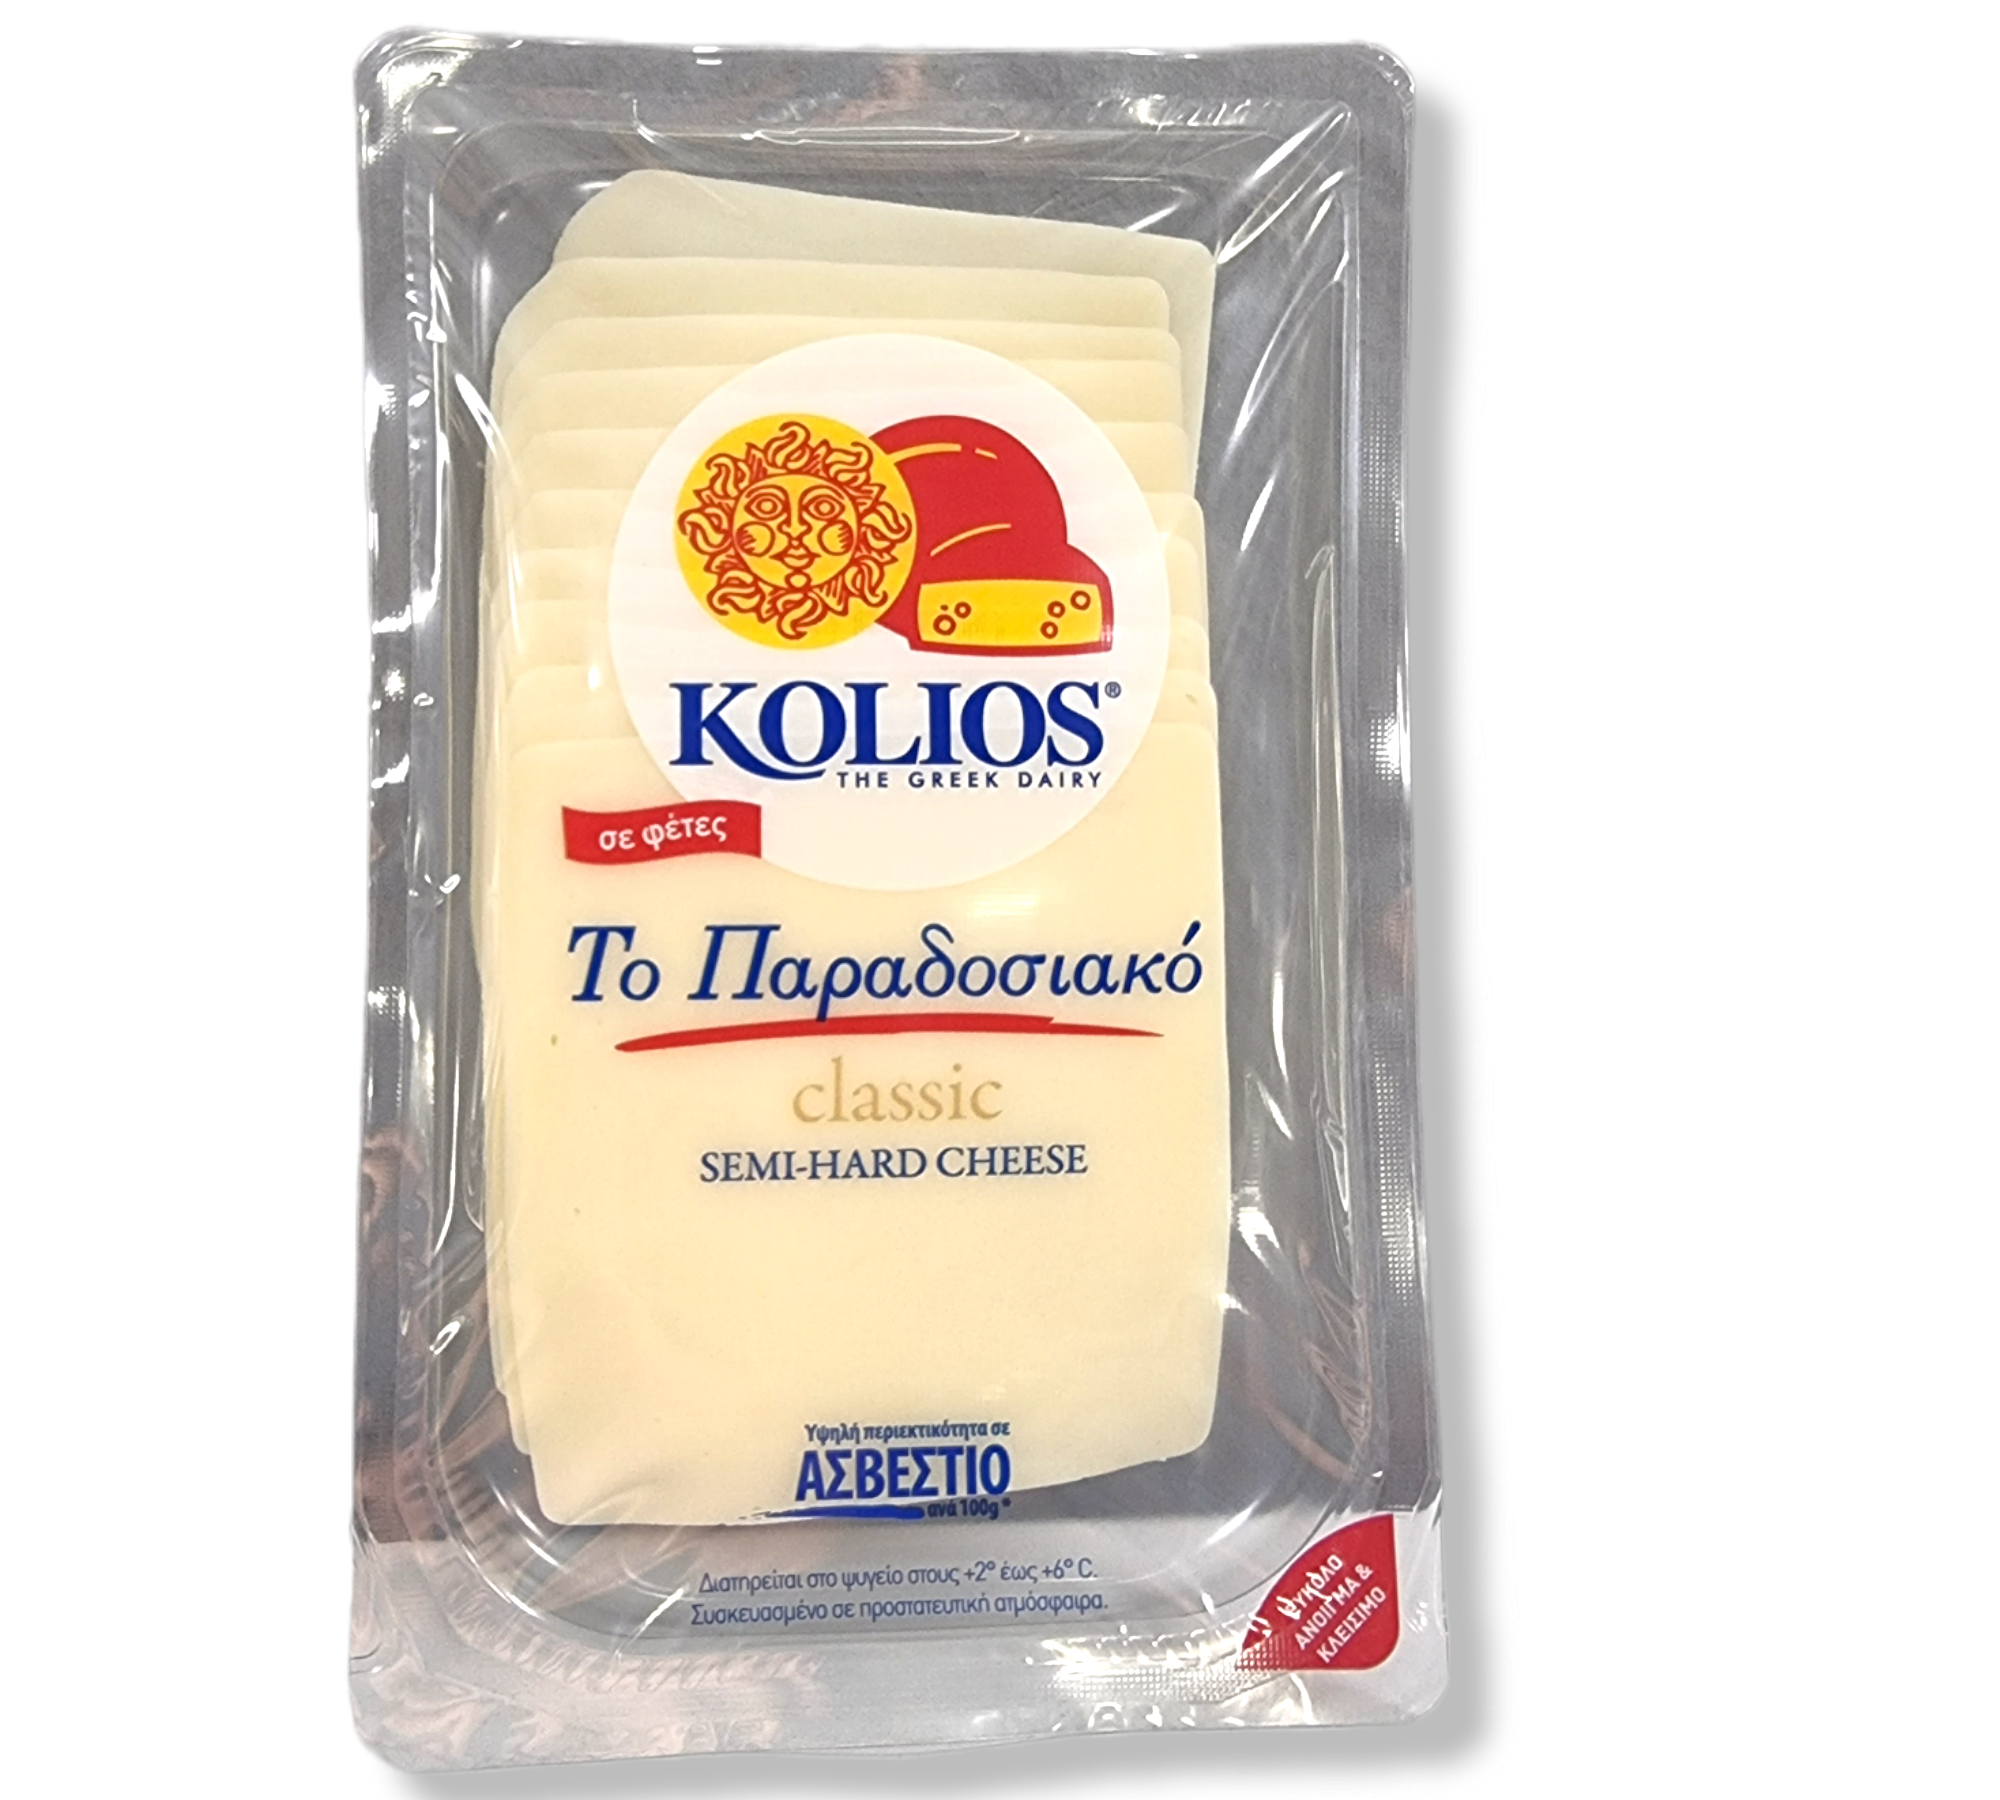 Kolios traditioneller Halbharter Käse in Scheiben 180g (Käse) - Bild 1